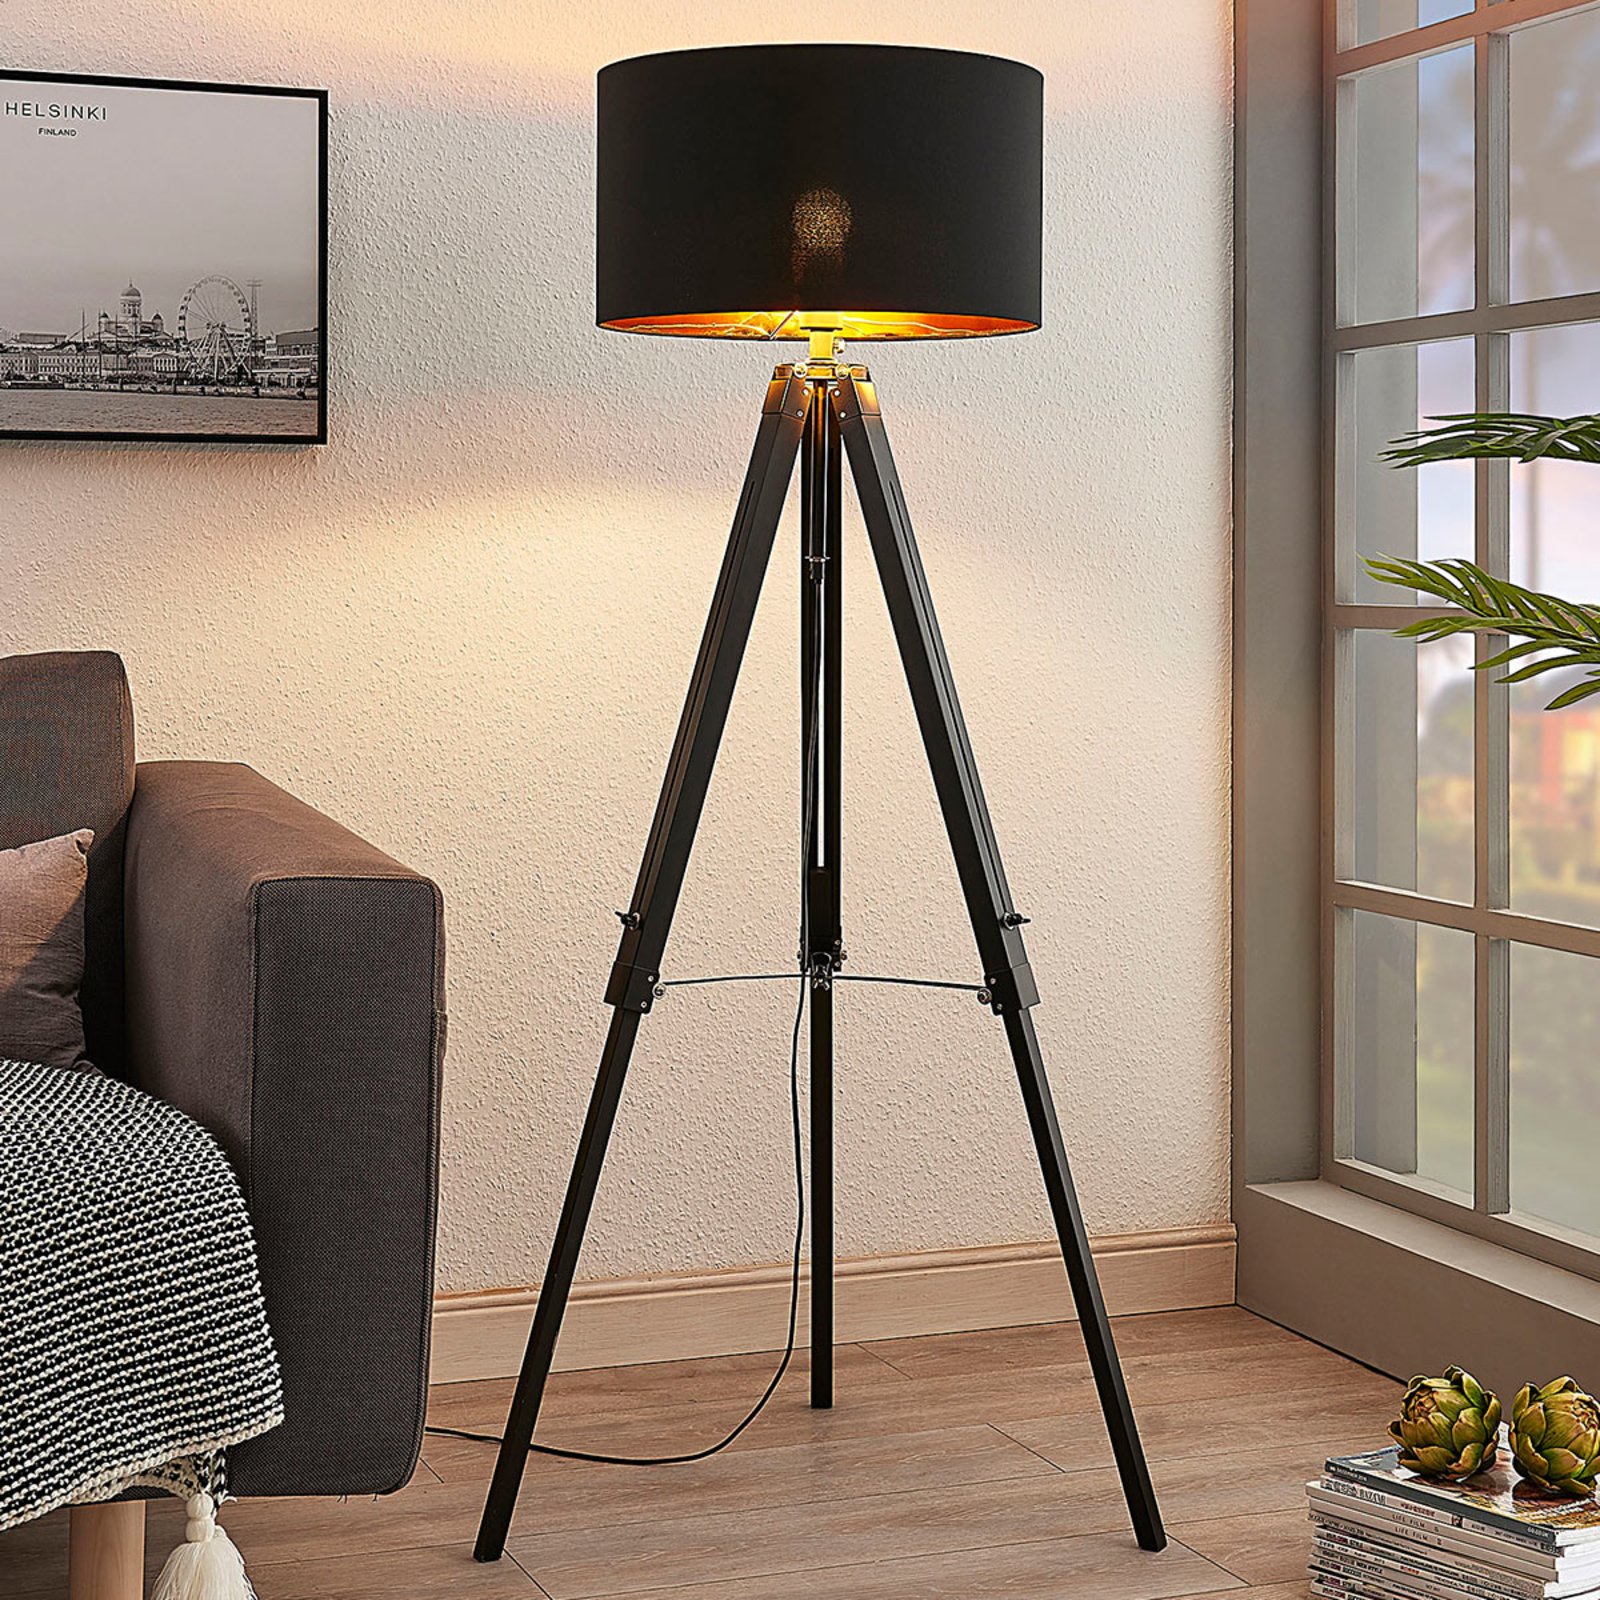 Trójnożna lampa stojąca Triac z drewnem, czarna